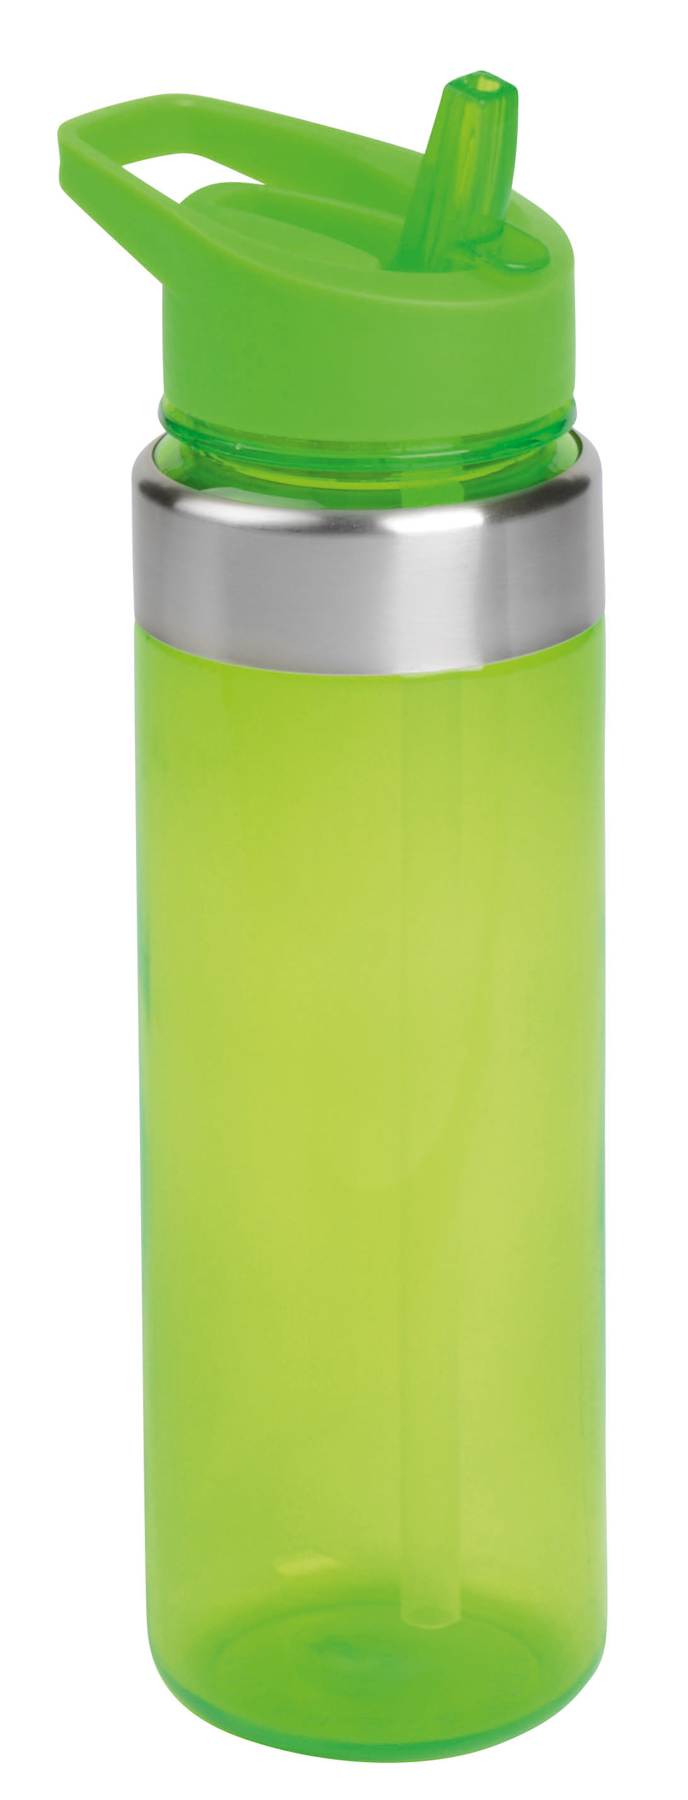 Sportowa butelka na wodę FORCY, zielone jabłko